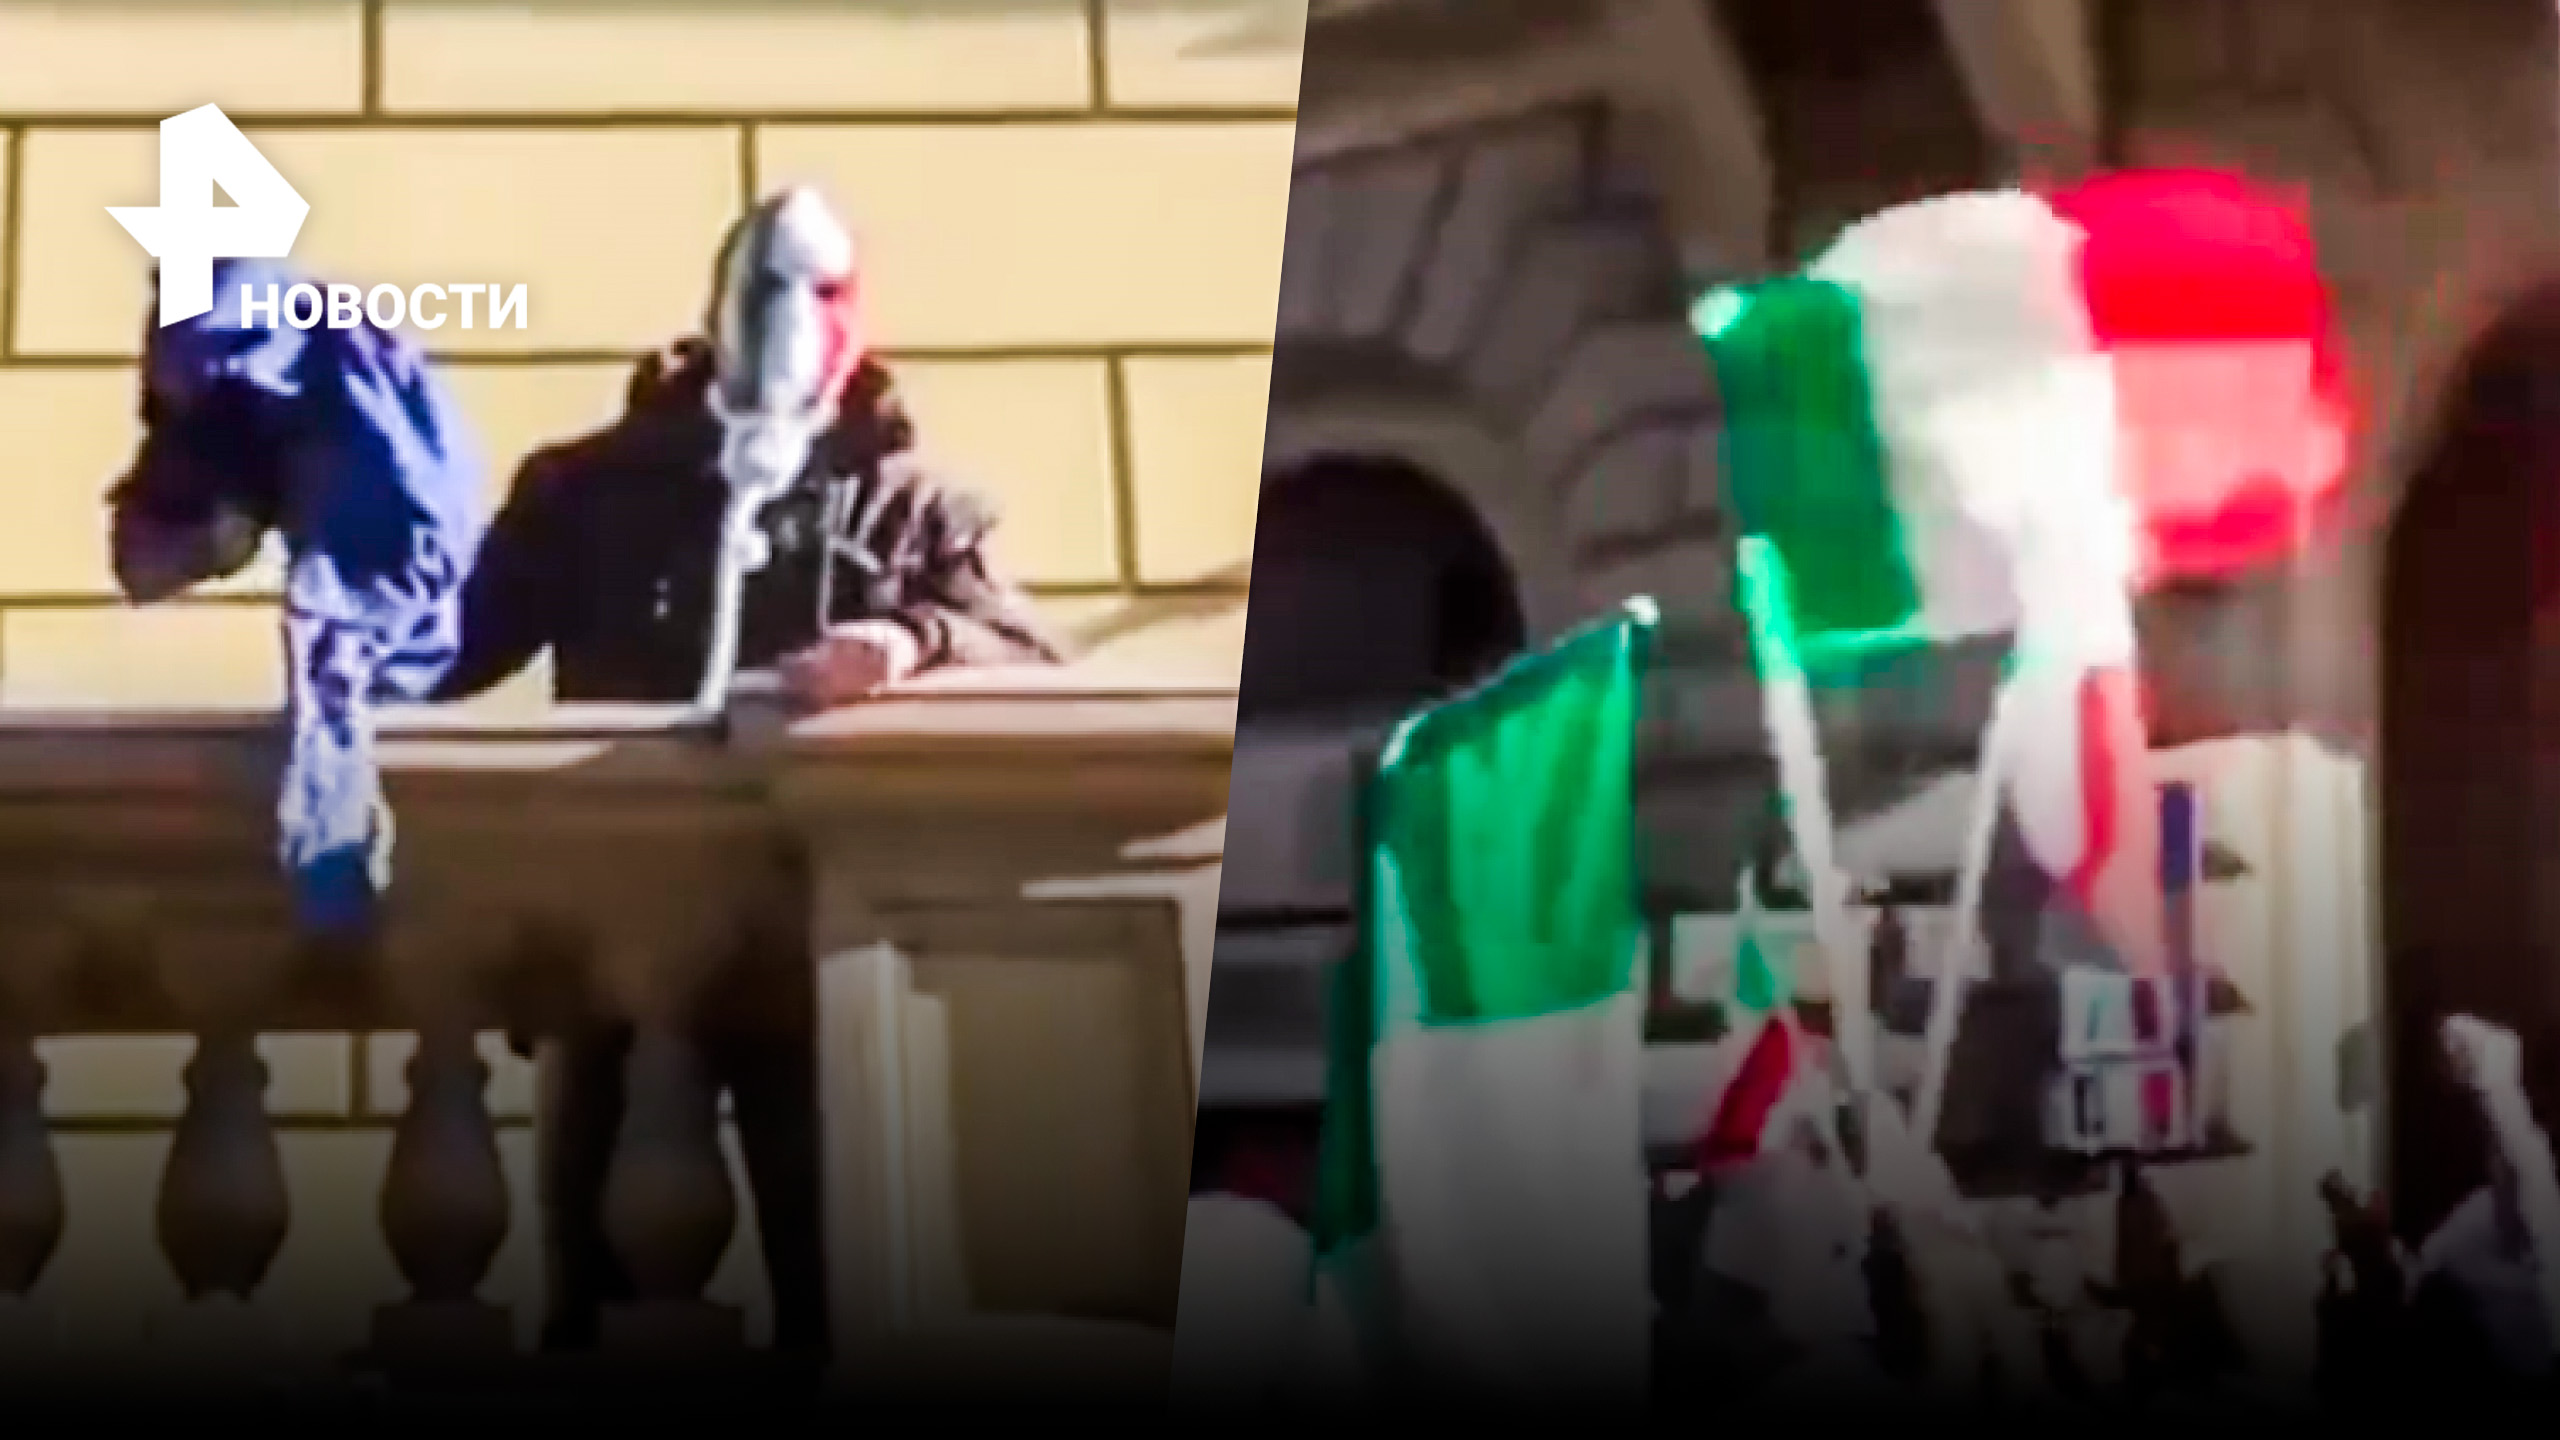 Итальянцы сорвали флаг ЕС с штаб-квартиры союза в Риме / РЕН Новости